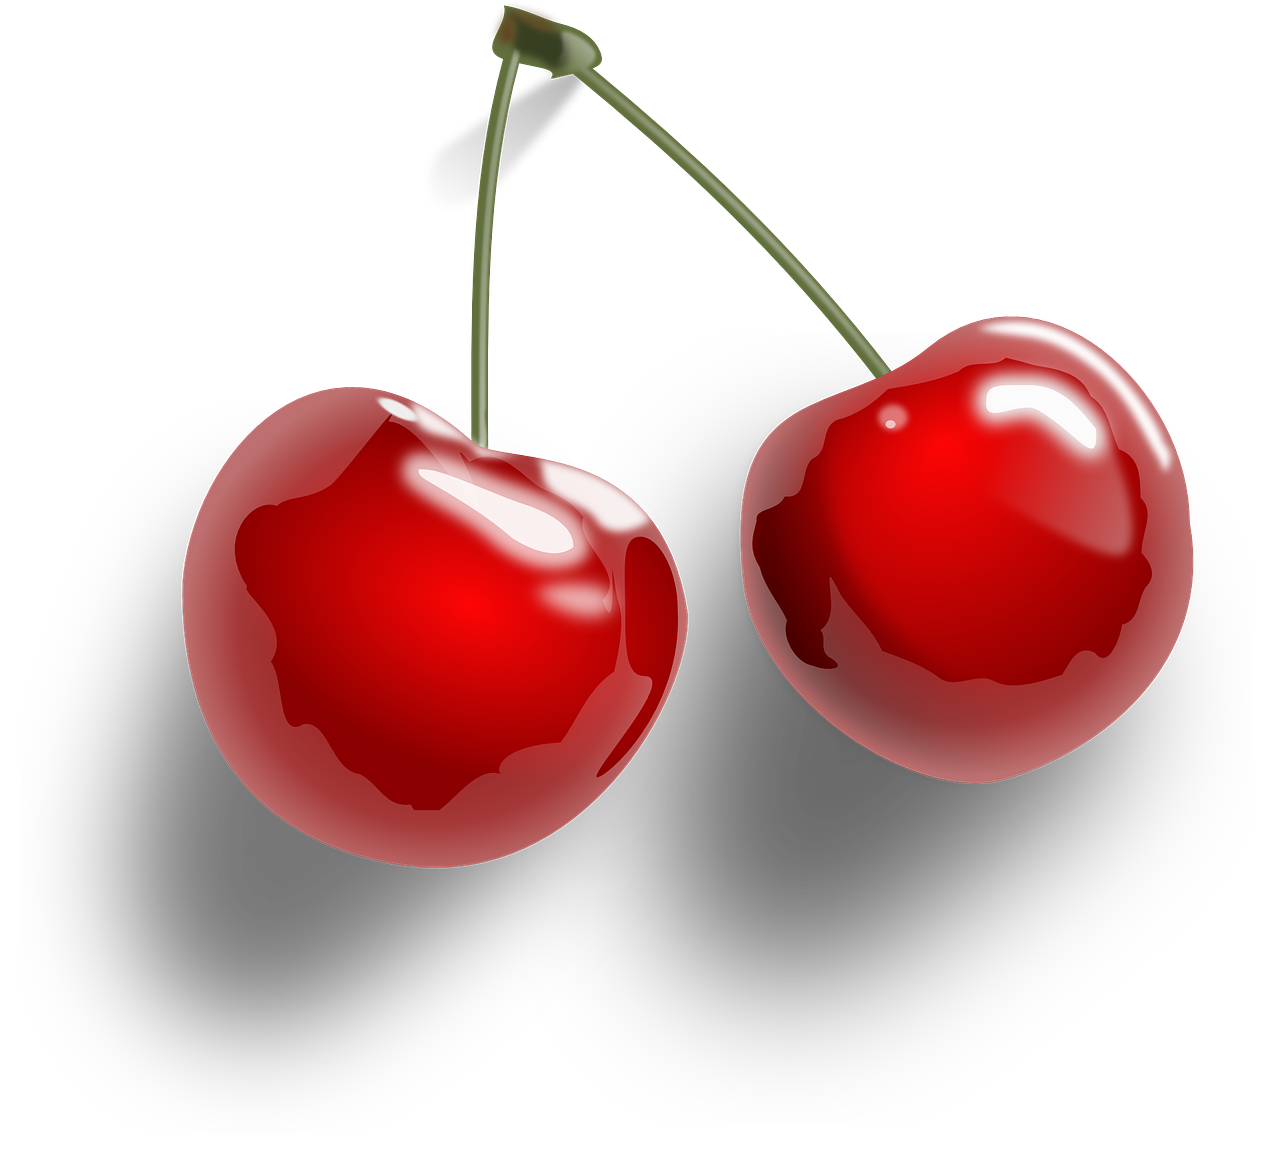 cherries fruit red free photo